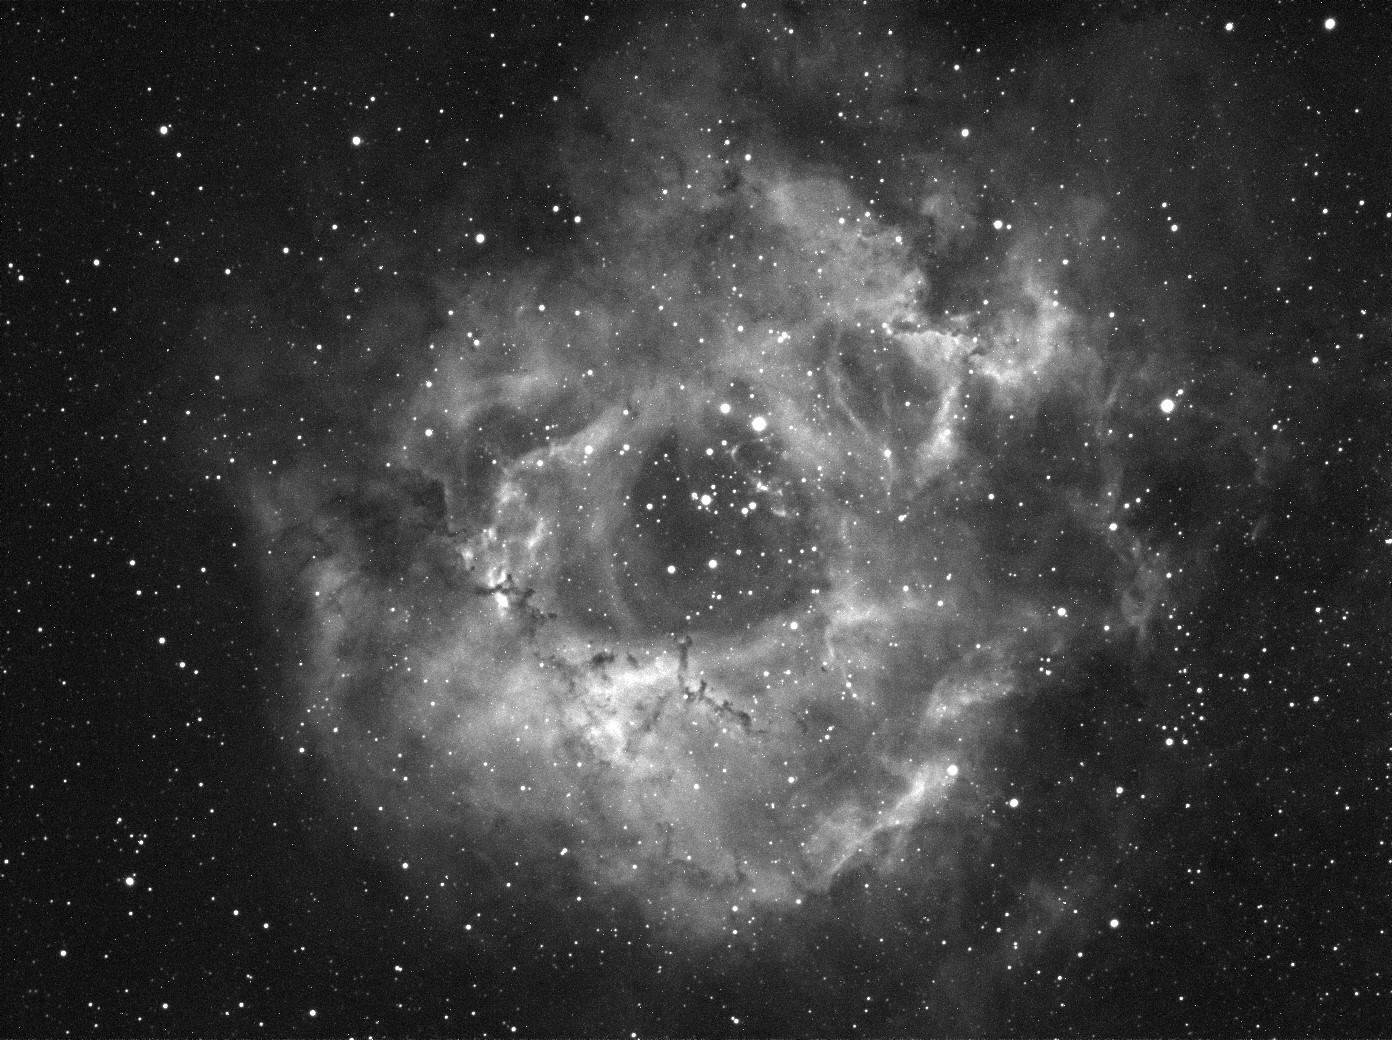 Rosette nebula_4x300s_Ha.jpg